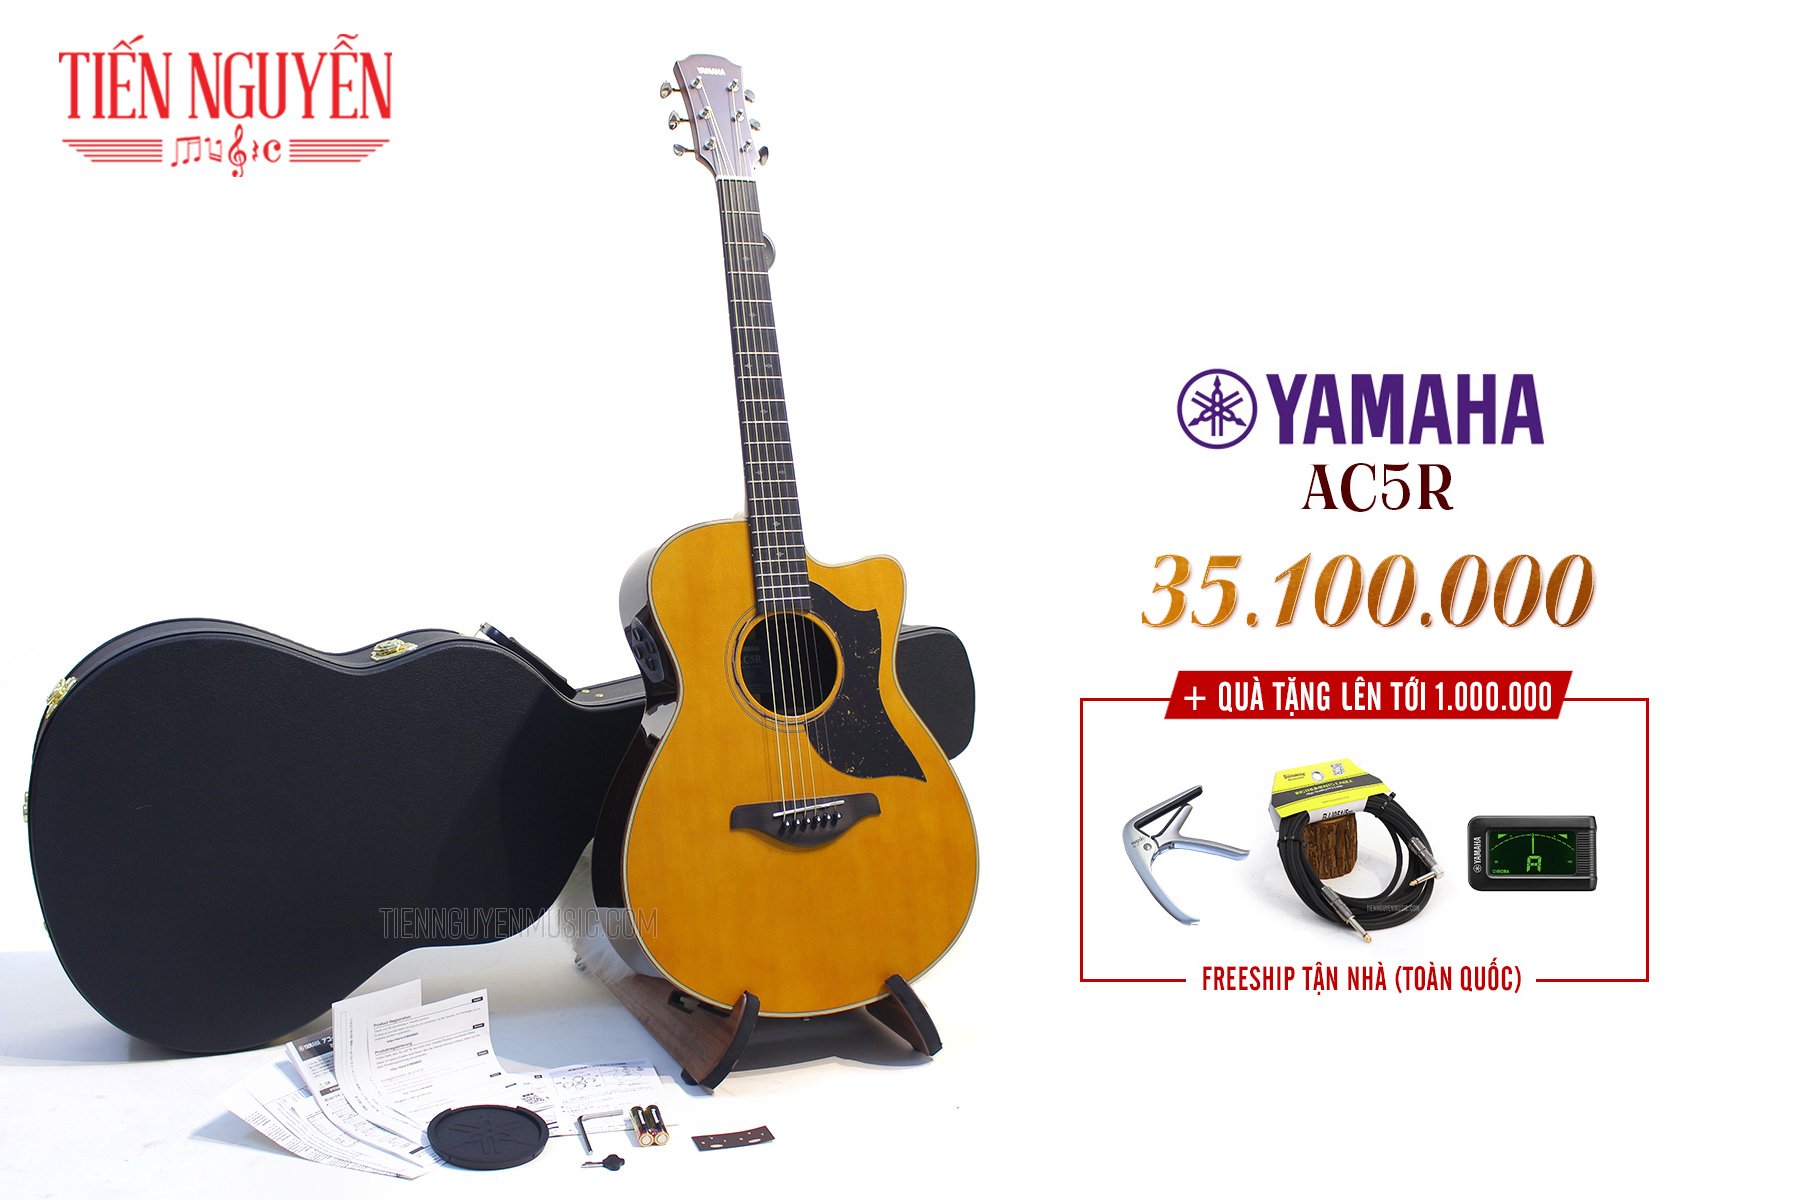 Guitar Acoustic Yamaha AC5R - Đẳng cấp, chất lượng, công nghệ và rẻ đến bất ngờ